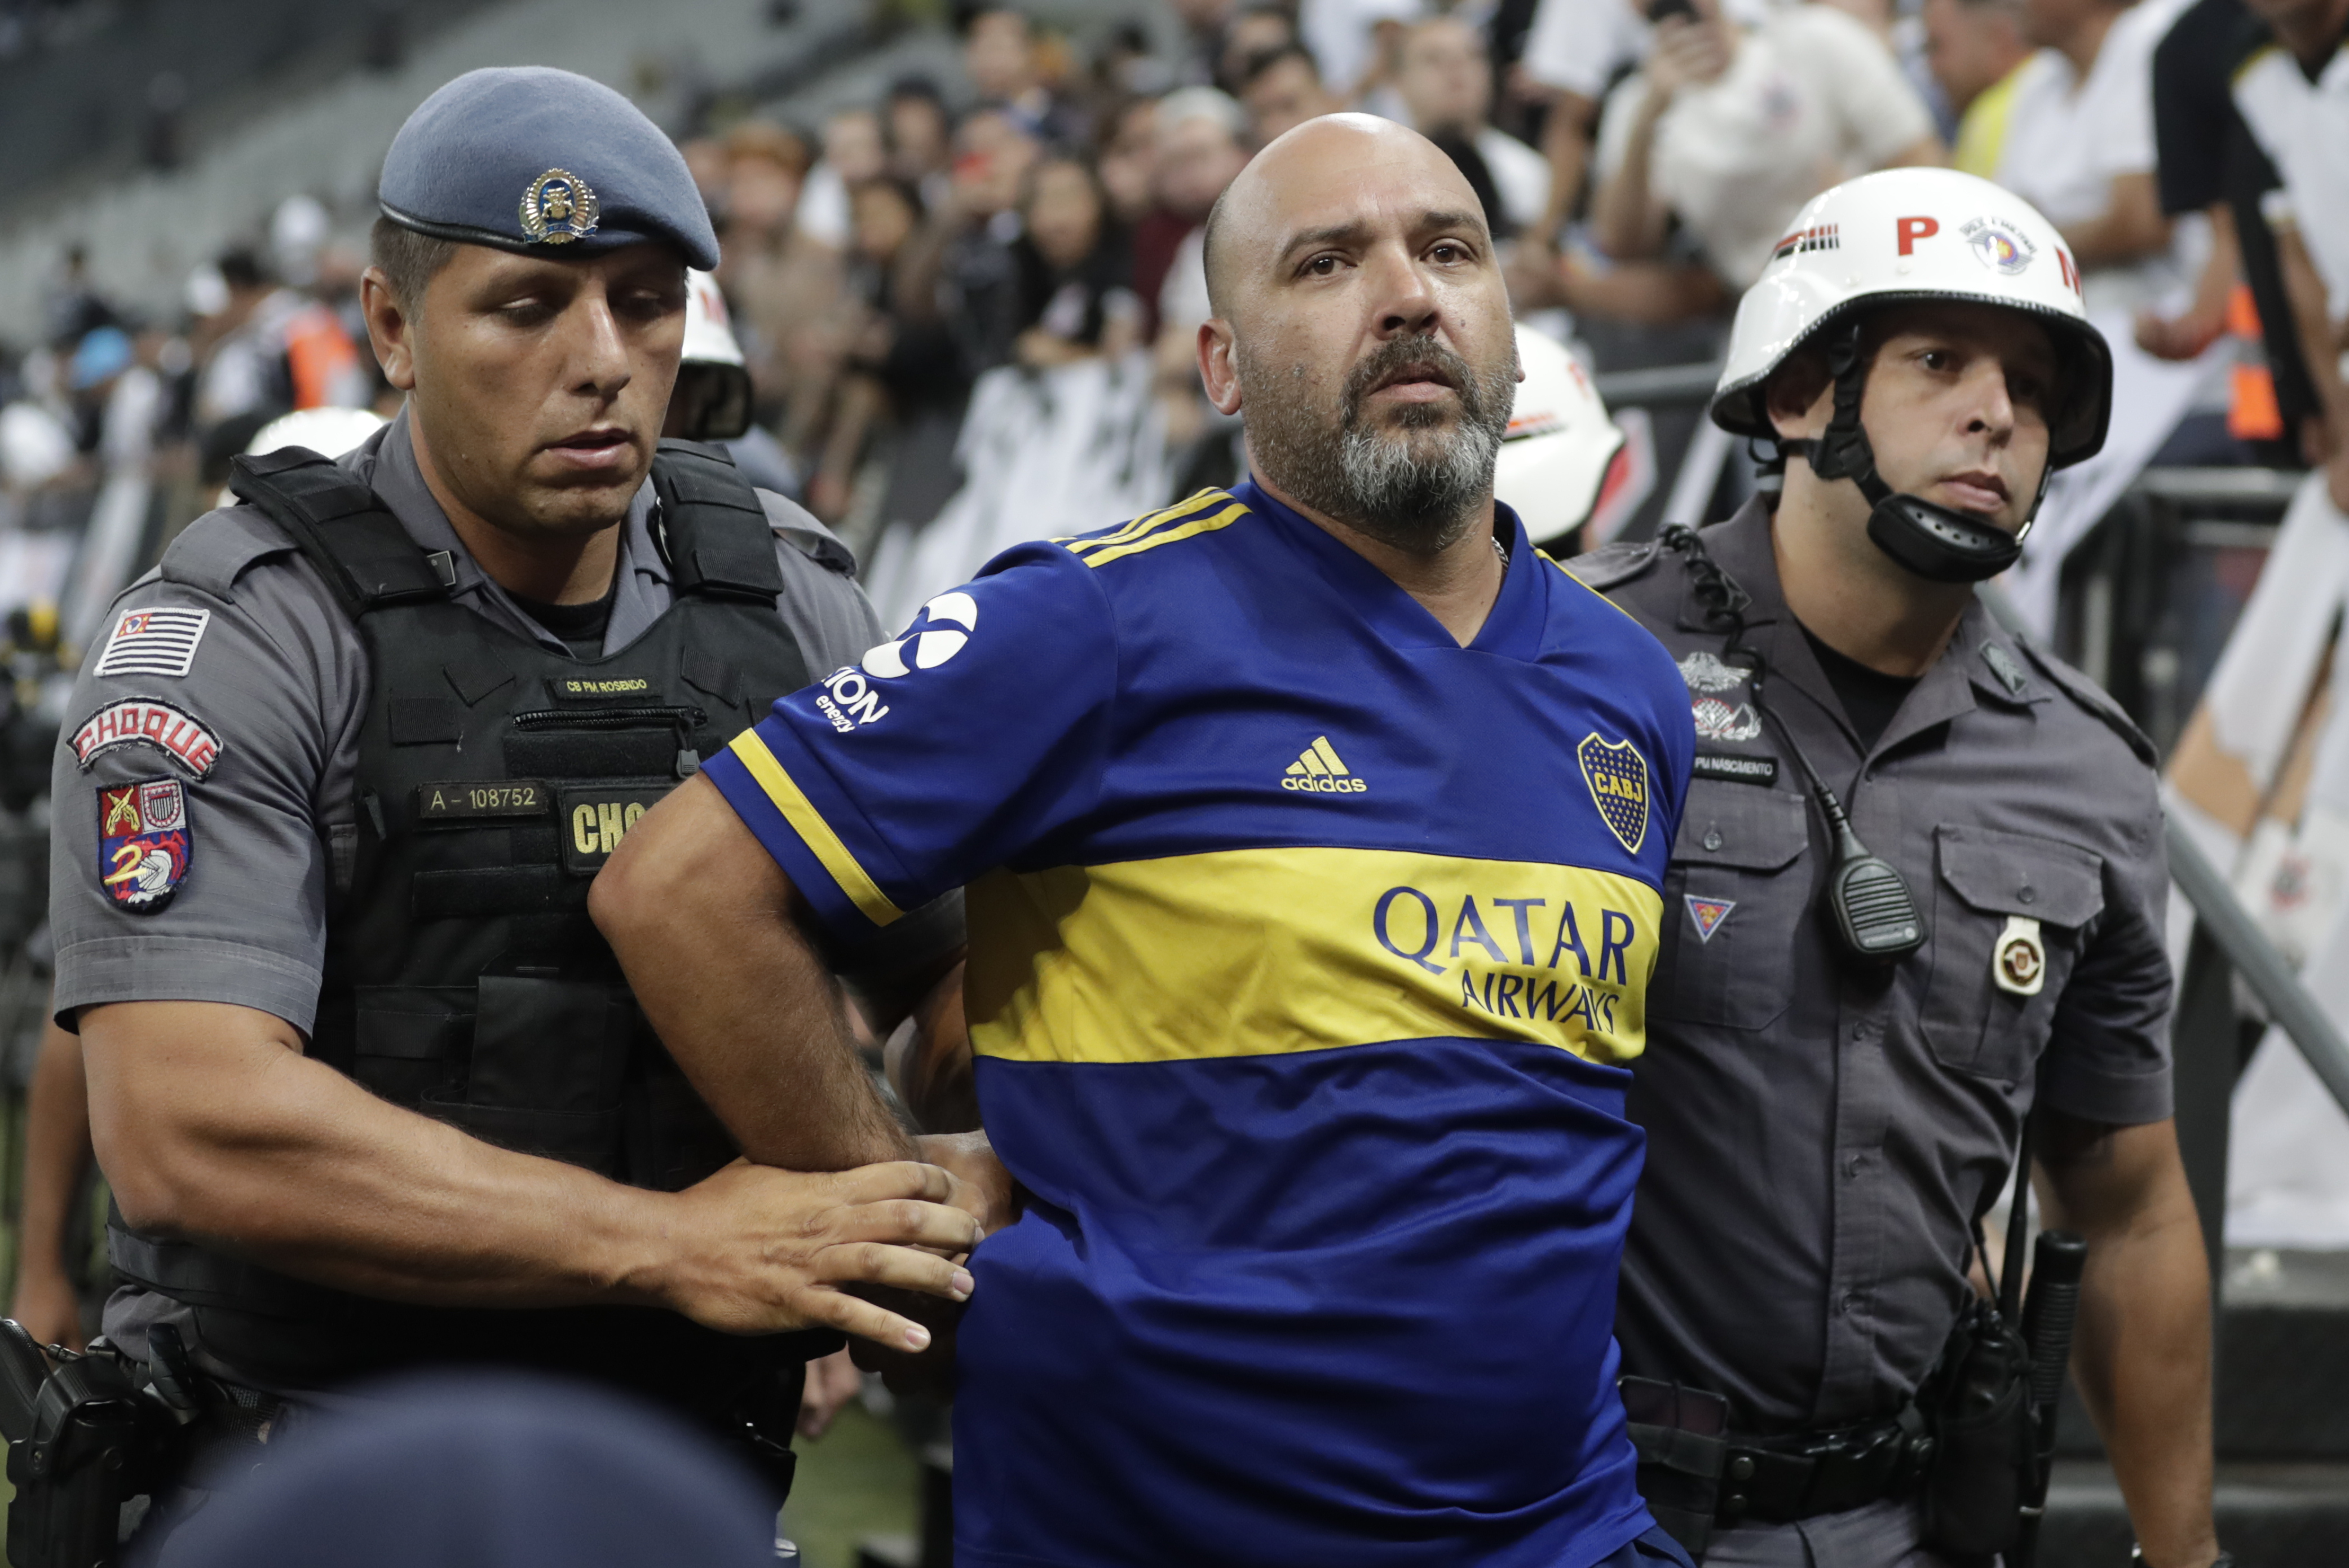 Torcedor do Boca preso por ato racista é solto após pagar fiança